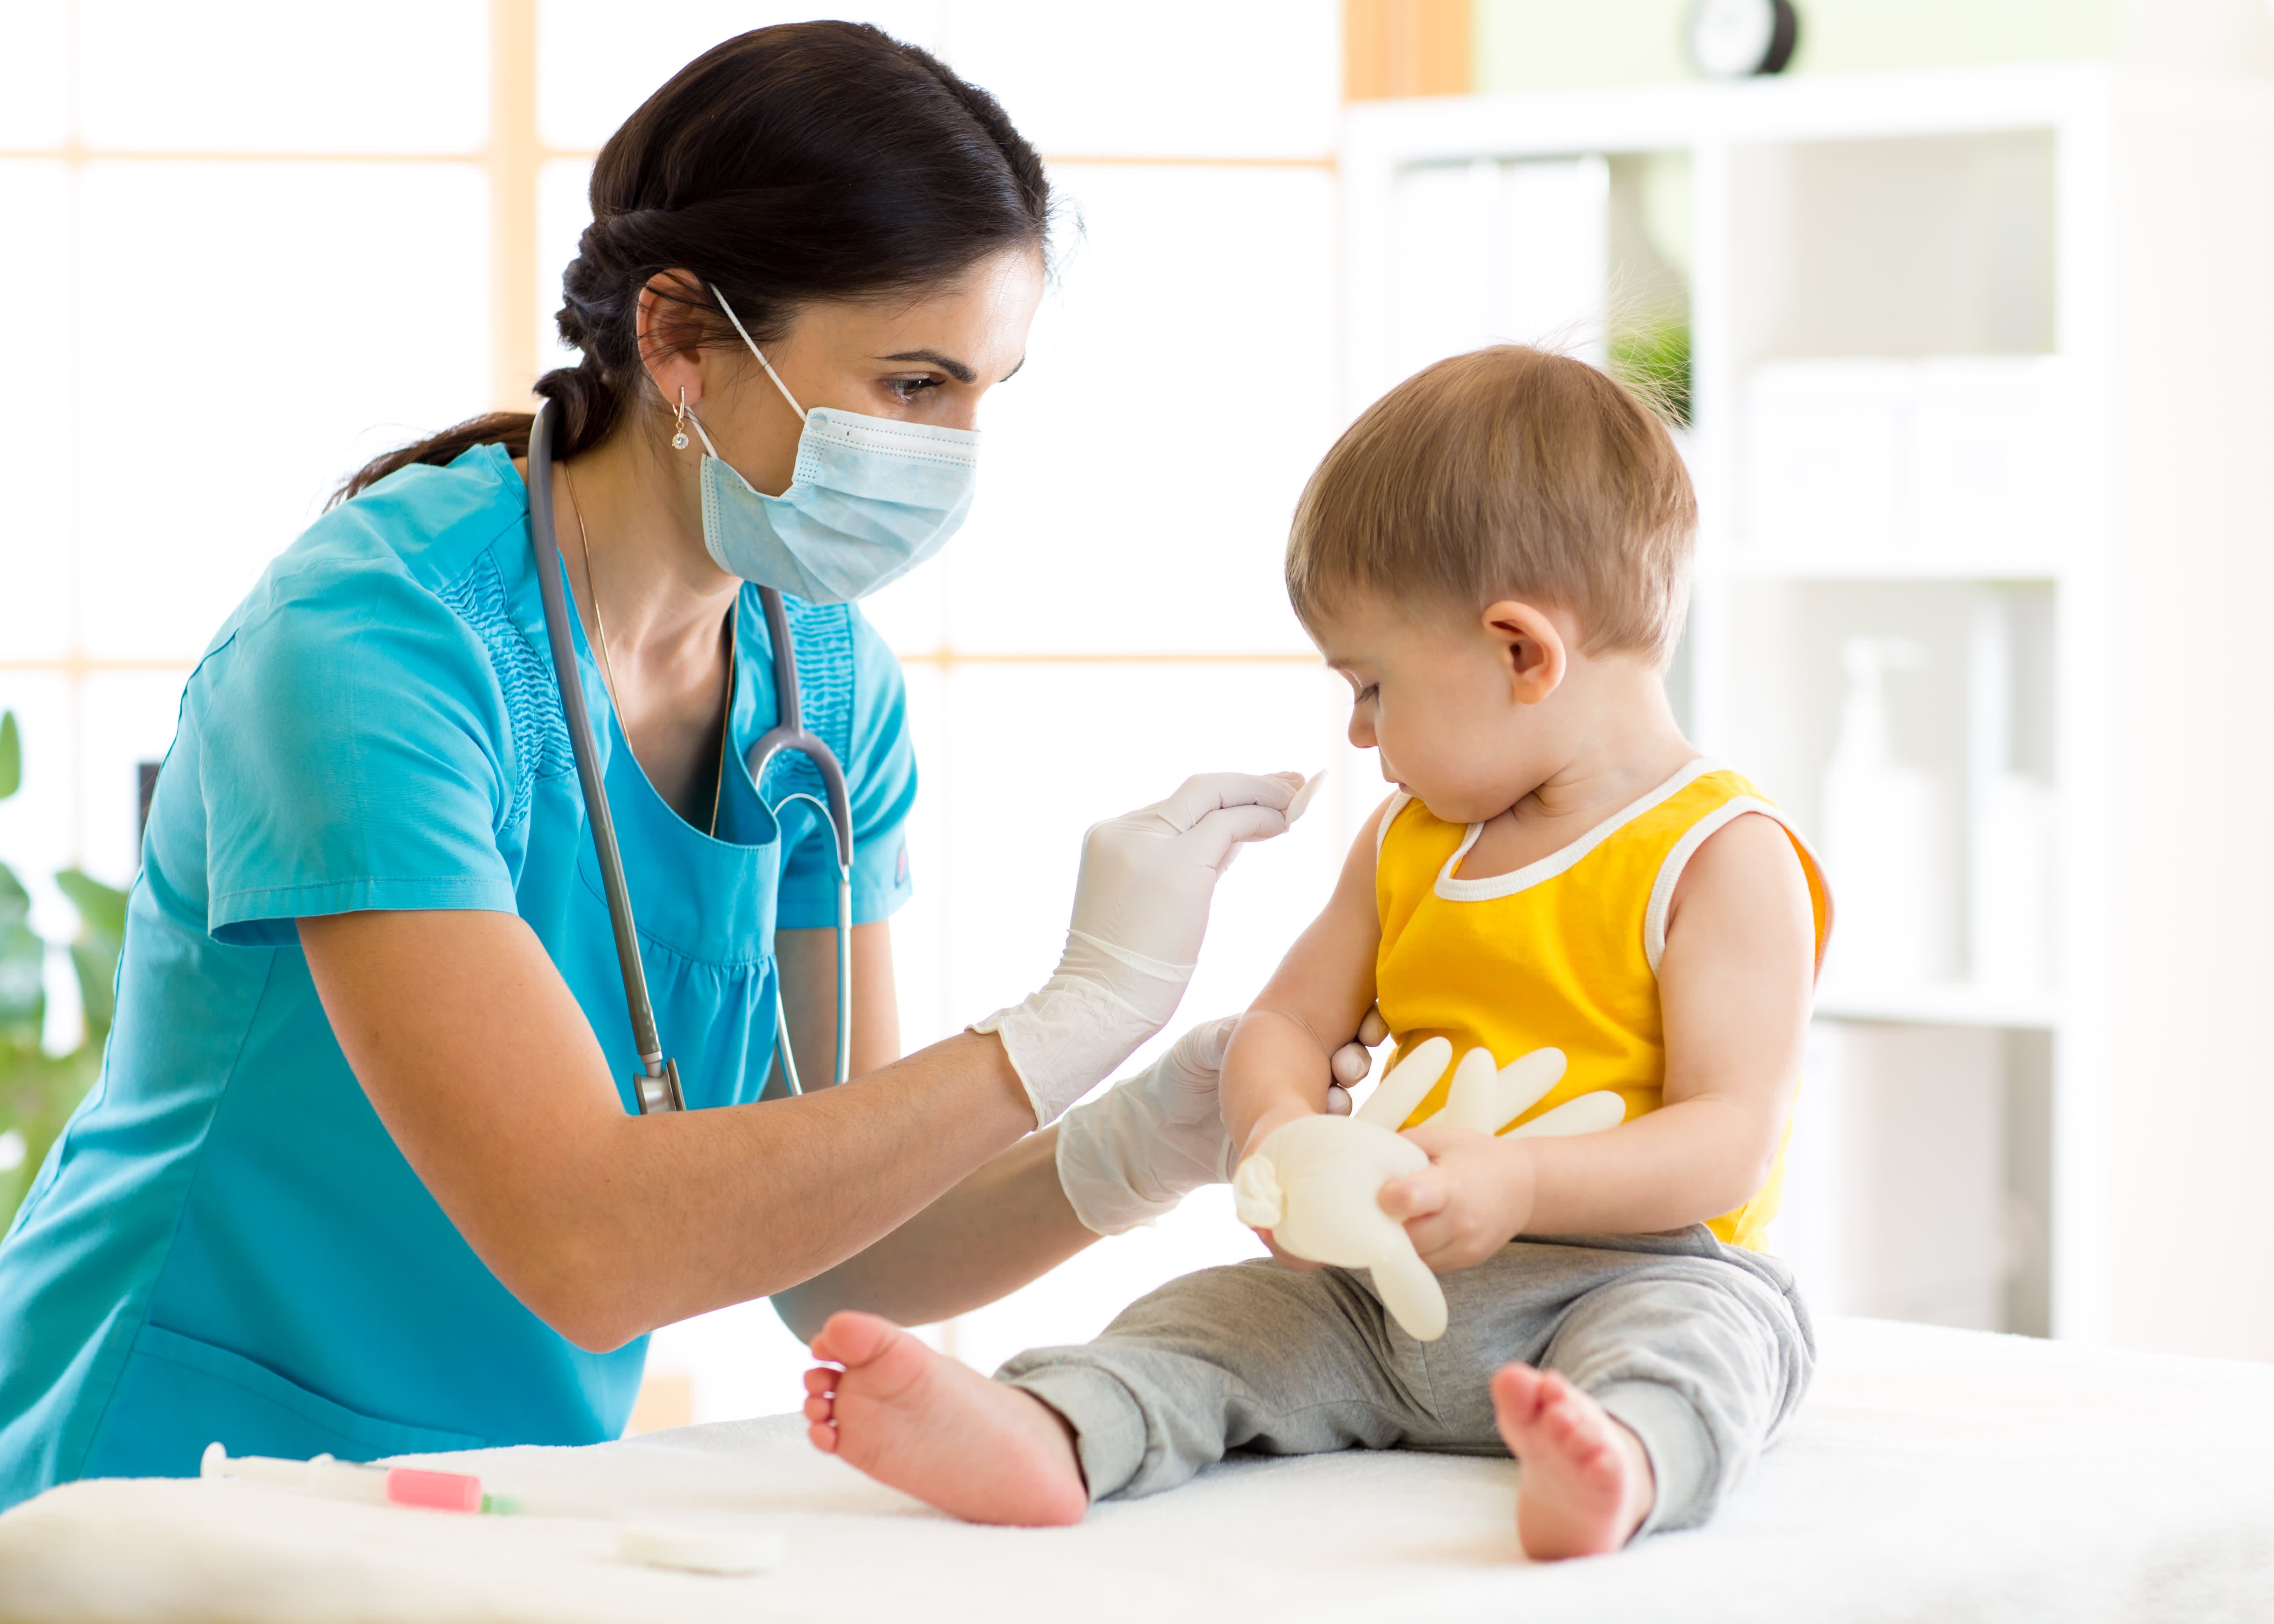 Вакцины в детских поликлиниках. Вакцинация детей. Прививка детям. Иммунизация детей. Медсестра и ребенок.